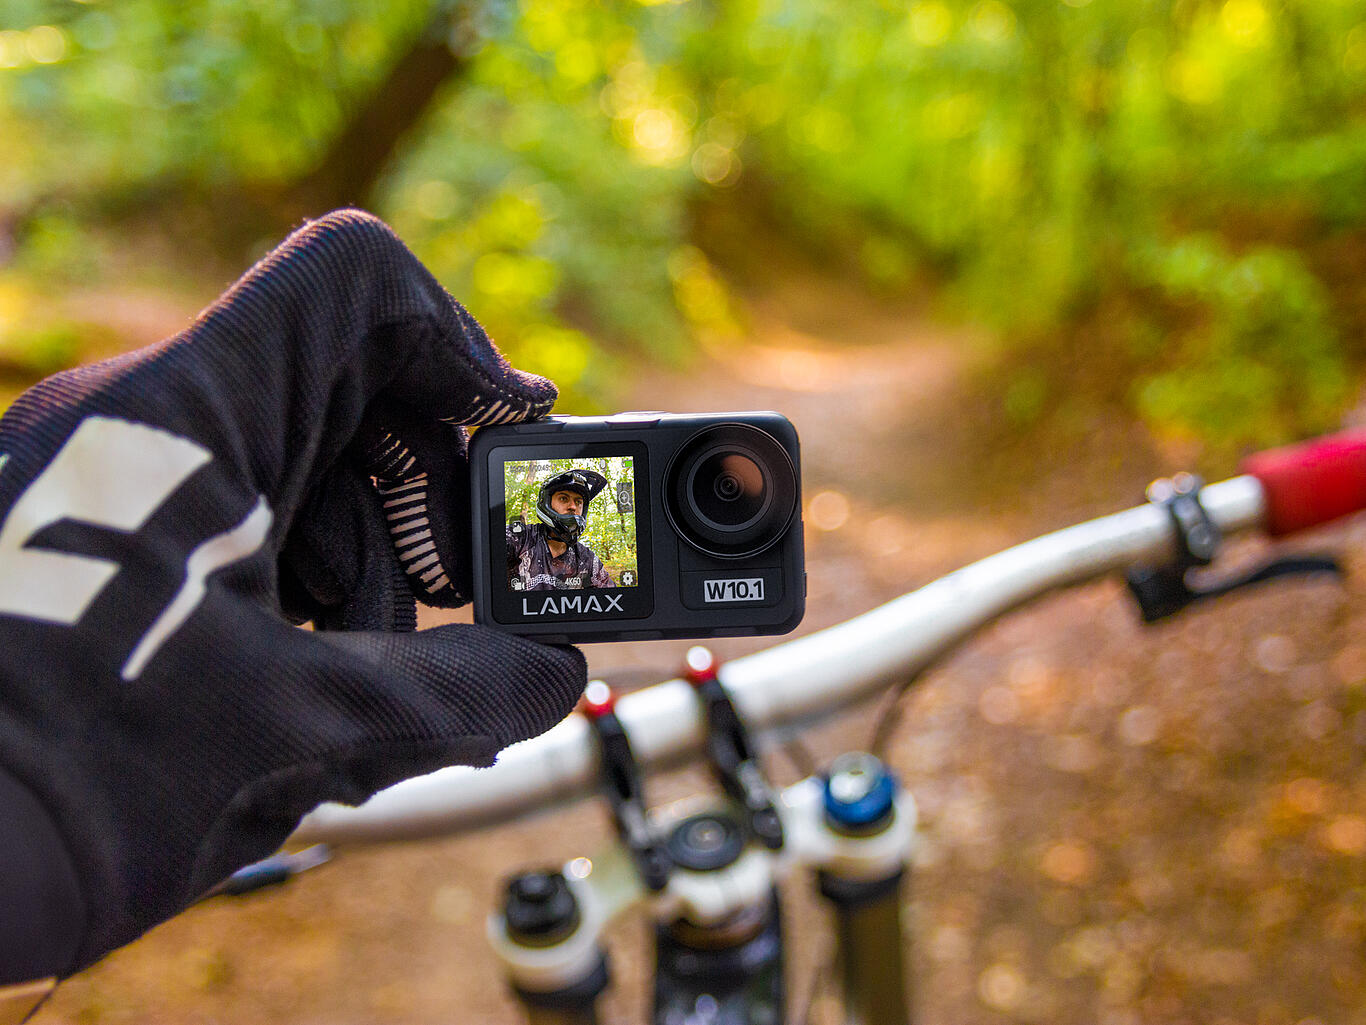 Outdoorová kamera Lamax W10.1 se hodí pro adrenalinové sporty i jízdu na kole